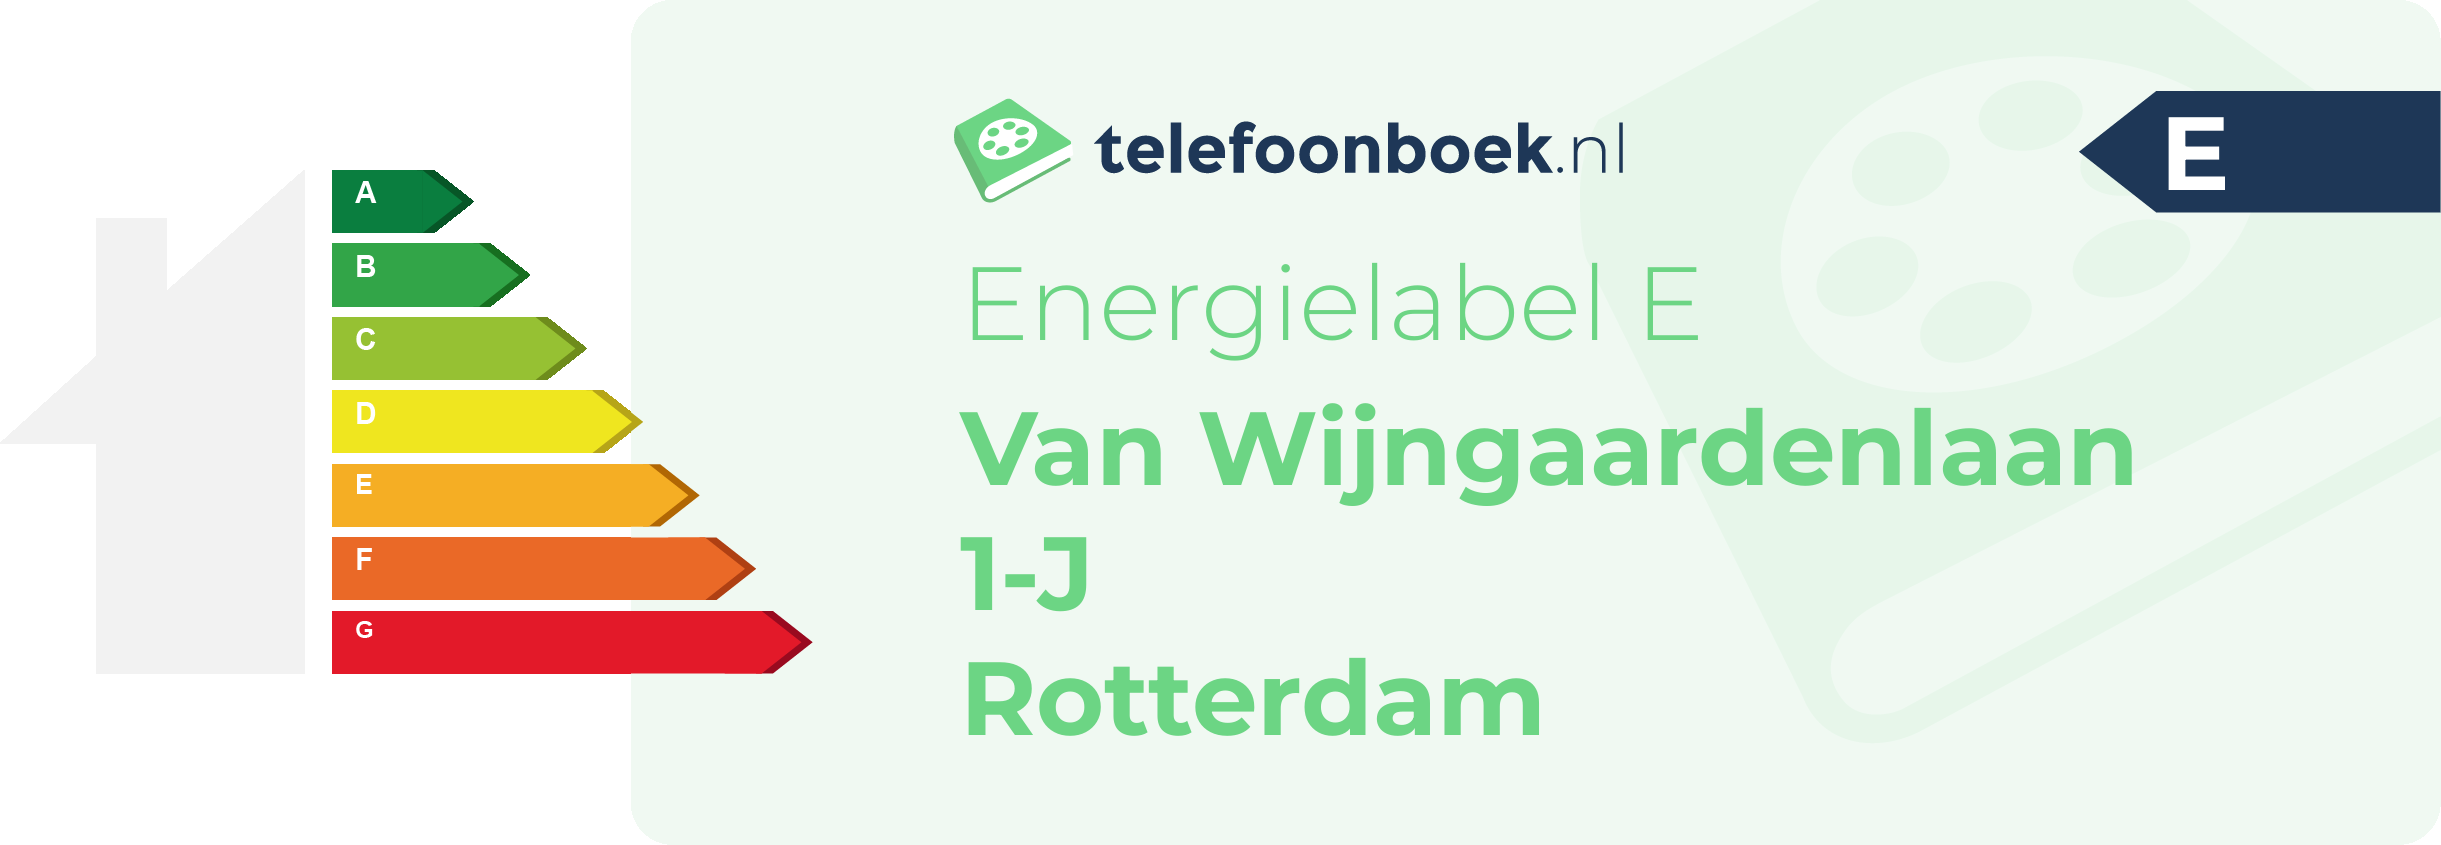 Energielabel Van Wijngaardenlaan 1-J Rotterdam